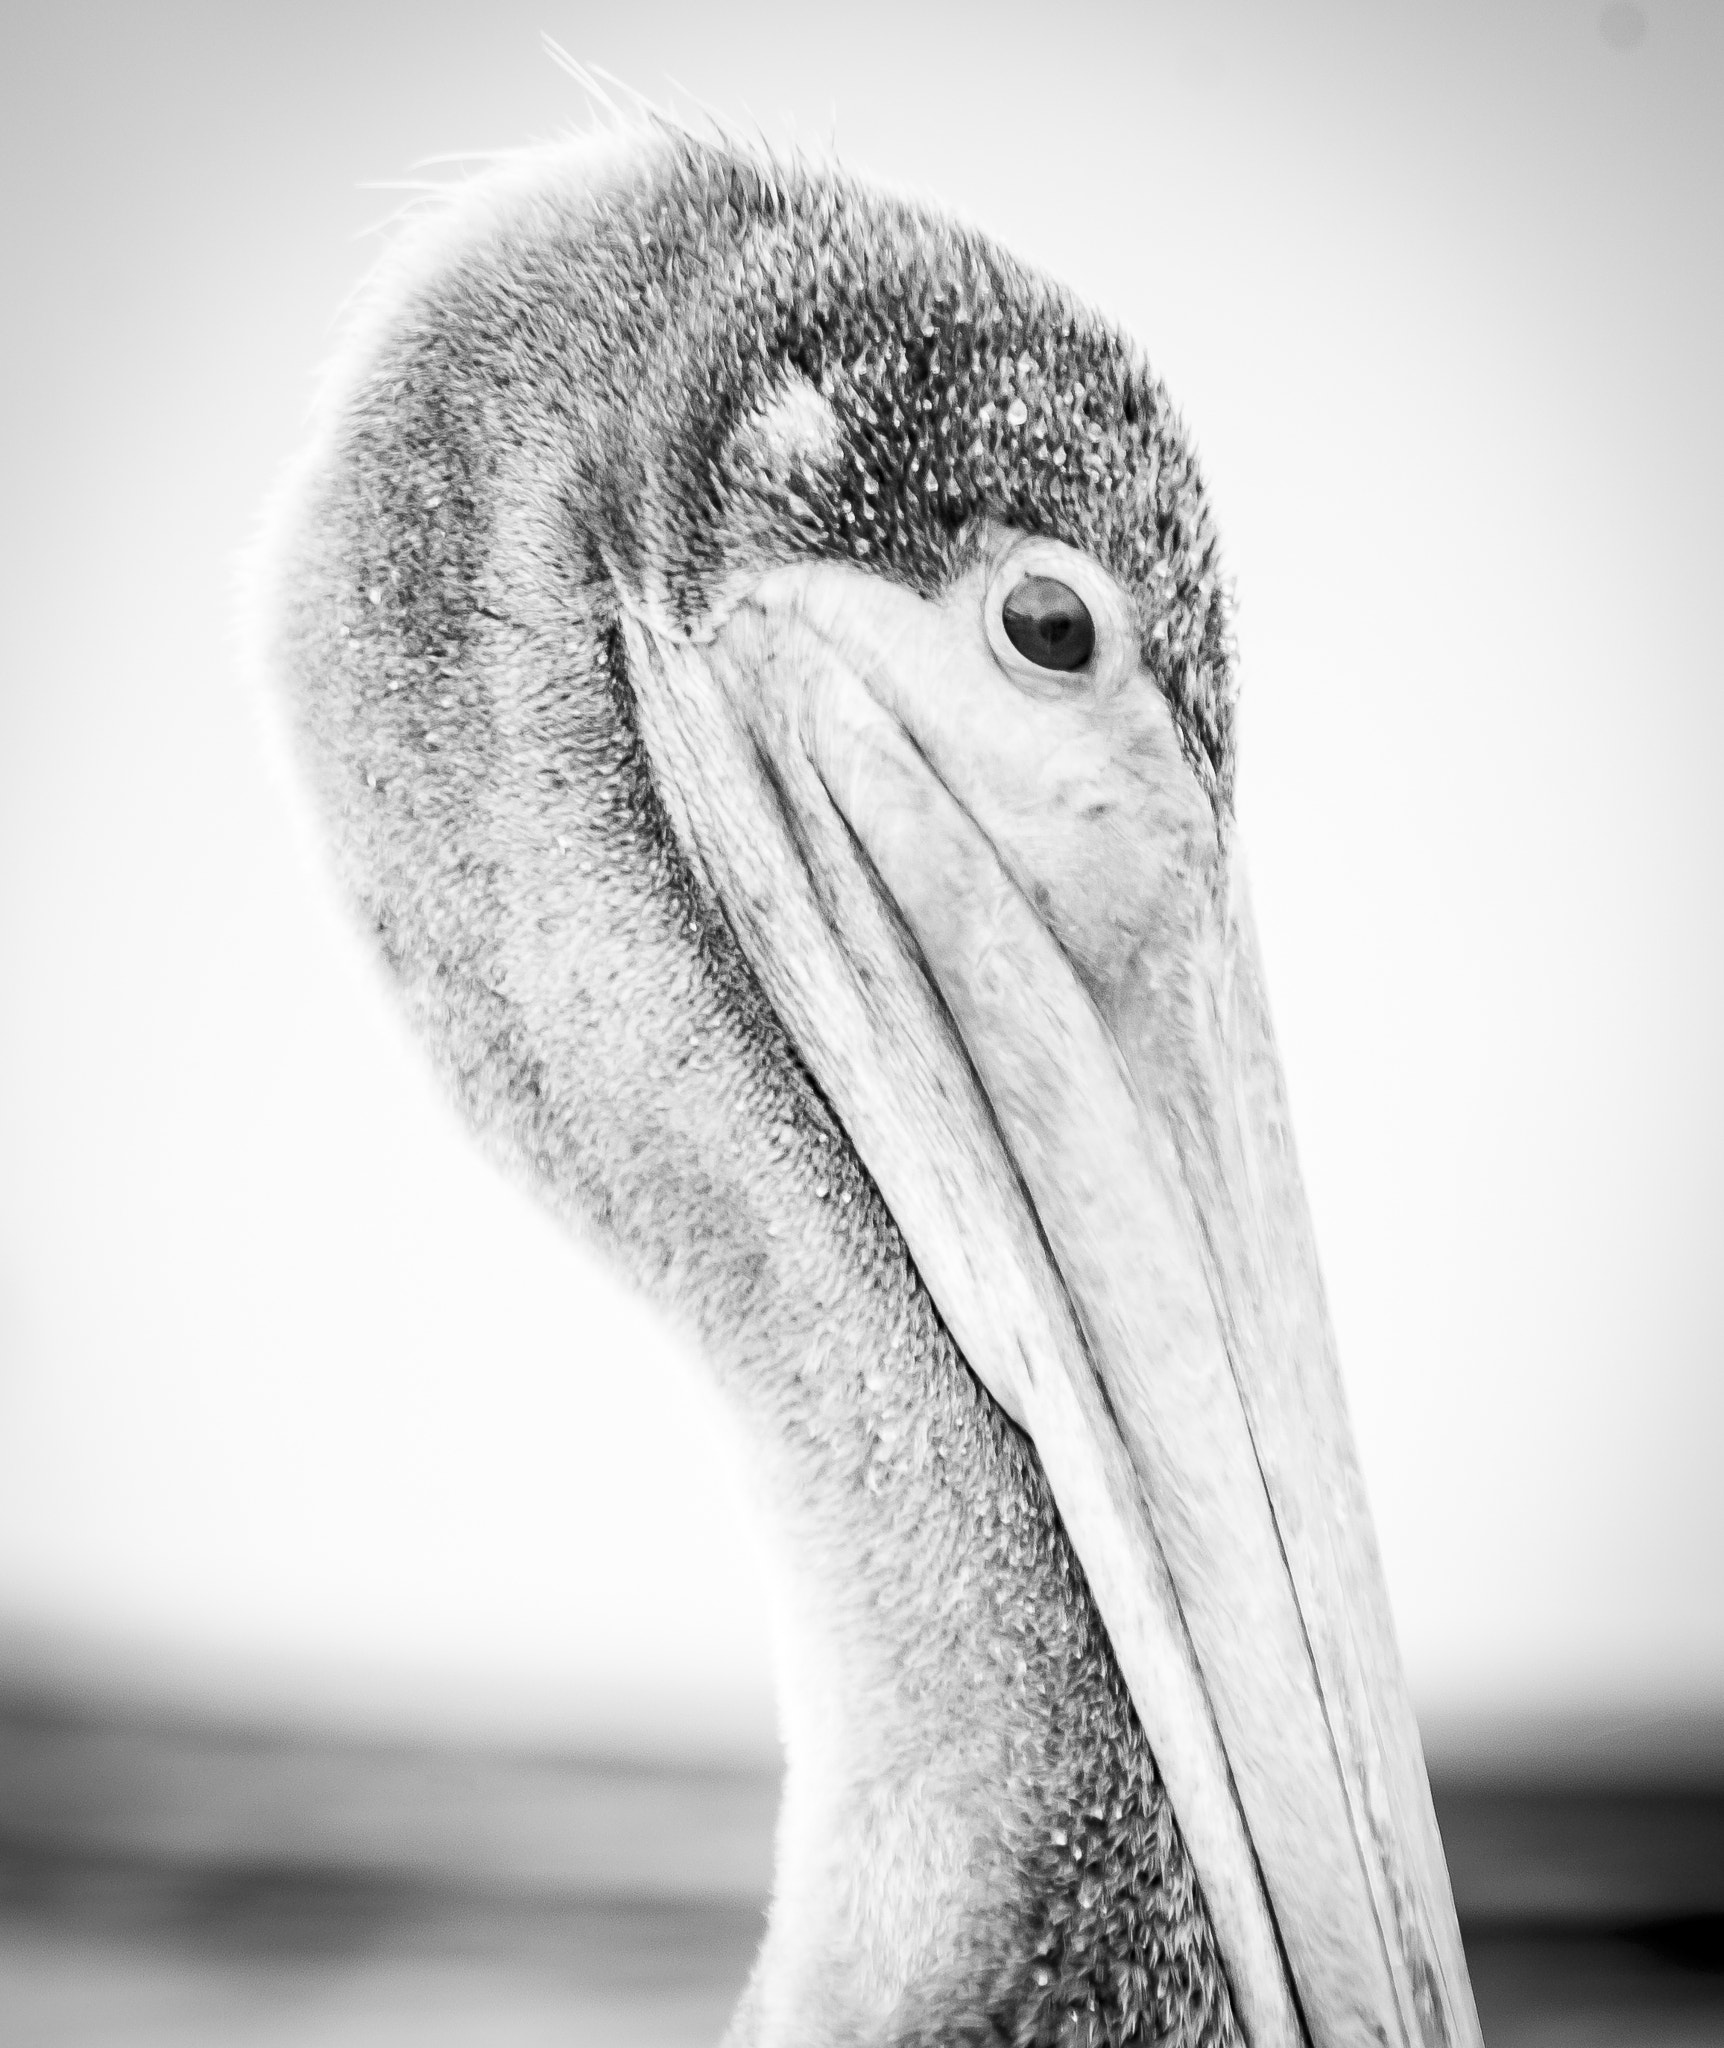 Pentax K-5 sample photo. Brown pelican (pelecanus occidentalis)° photography